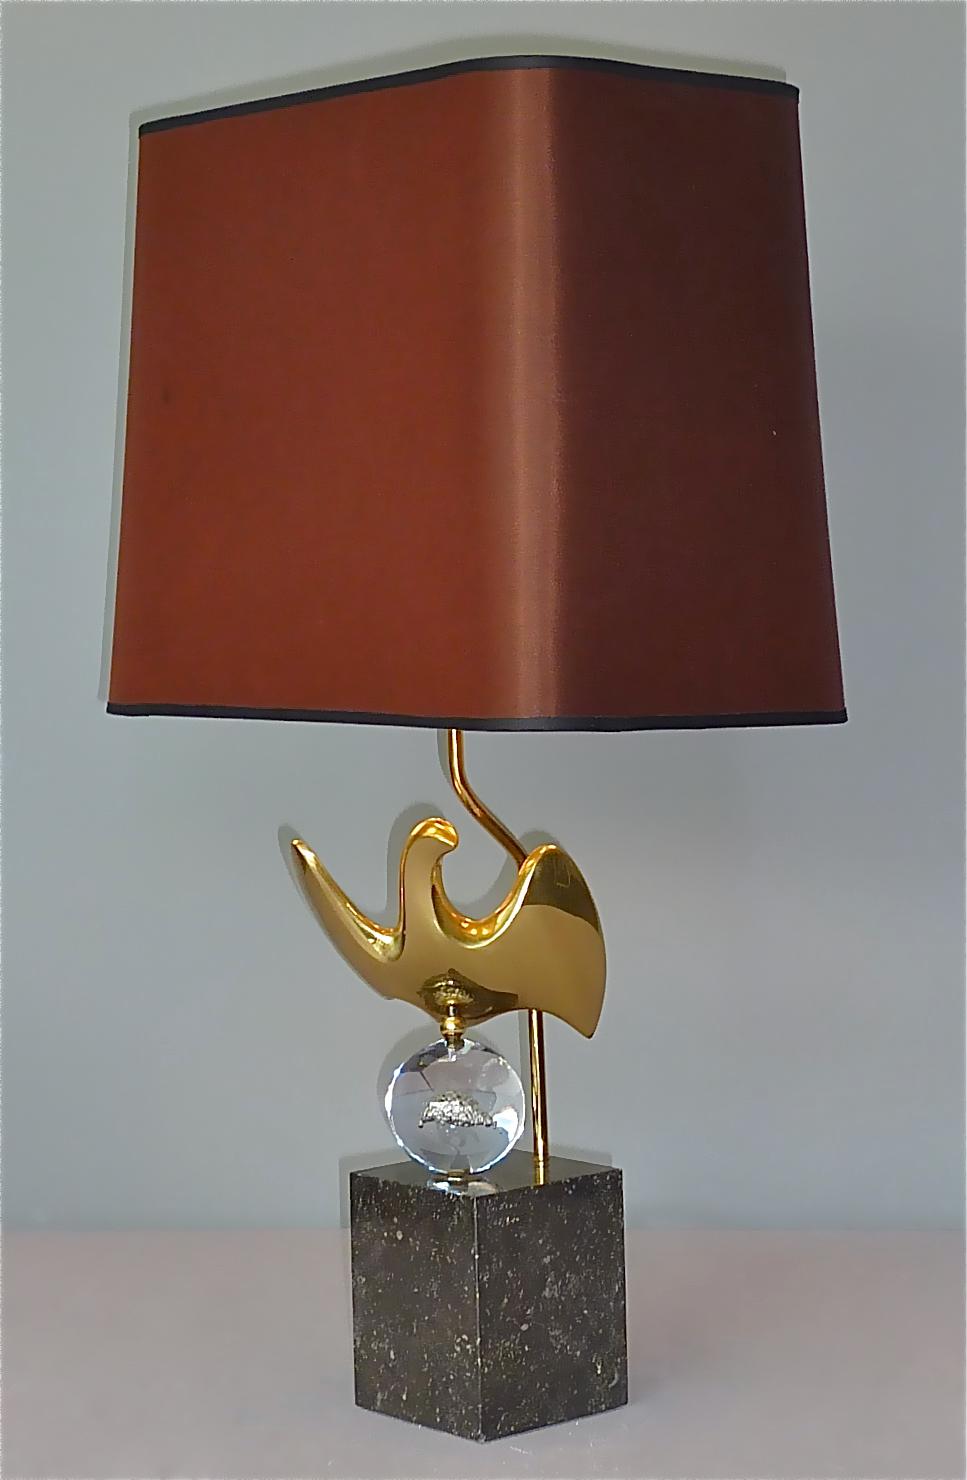 Superbe et très rare lampe de table abstraite sculpturale en forme d'oiseau par l'artiste Philippe Jean, France vers les années 1970. La lampe de table a une base carrée en granit gris noir, signée Ph. Jean et 107/300, donc d'une édition limitée,